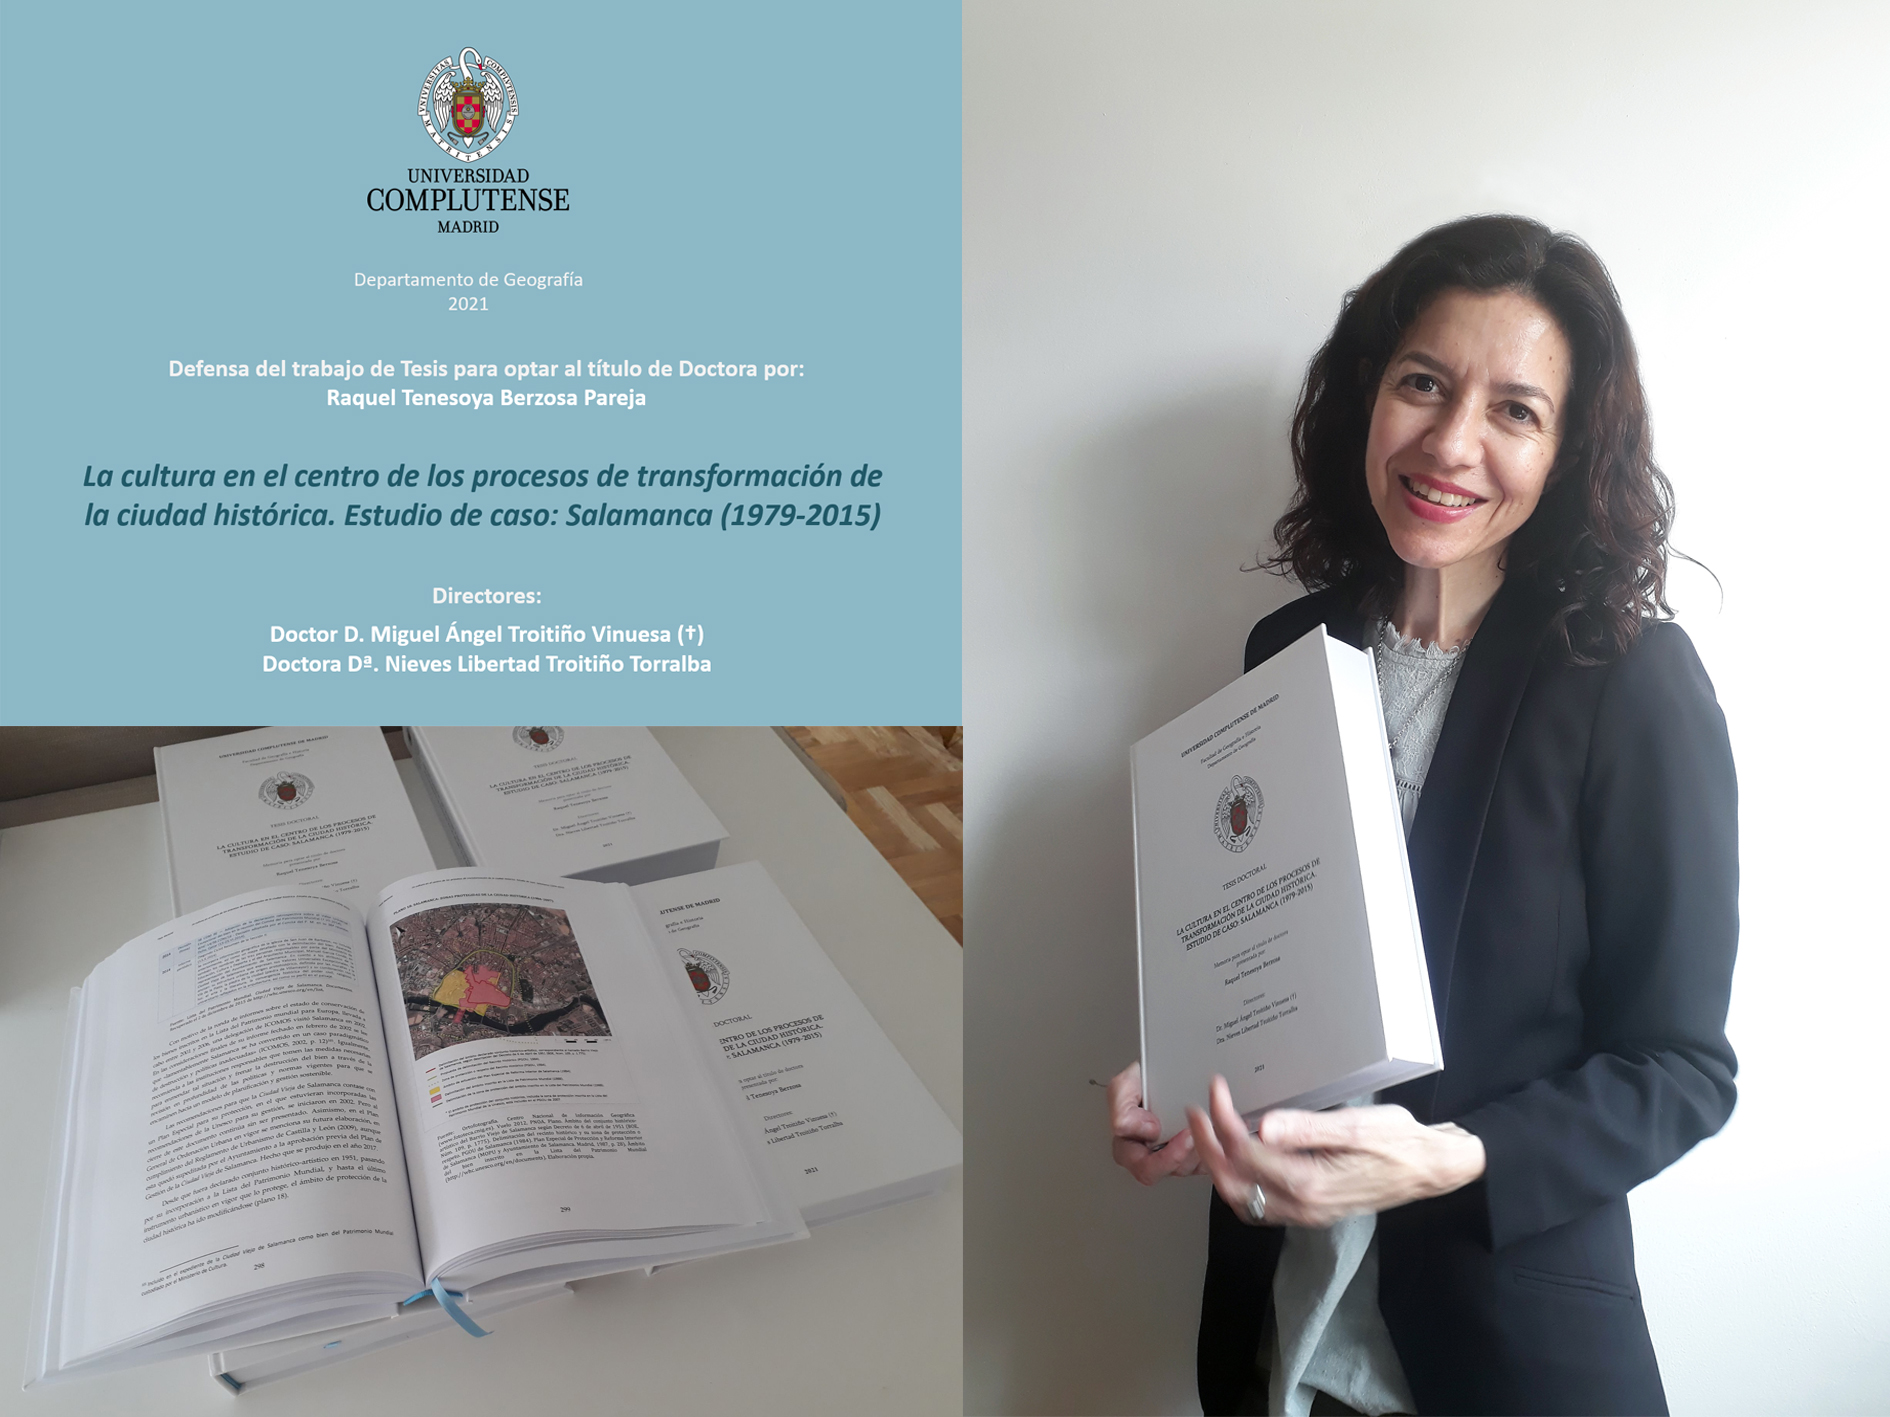 Raquel Tenesoya Berzosa Pareja defendió el pasado 14 de junio su tesis "La cultura en el centro de los procesos de transformación de la ciudad histórica. Estudio de caso: Salamanca (1979-2015)"